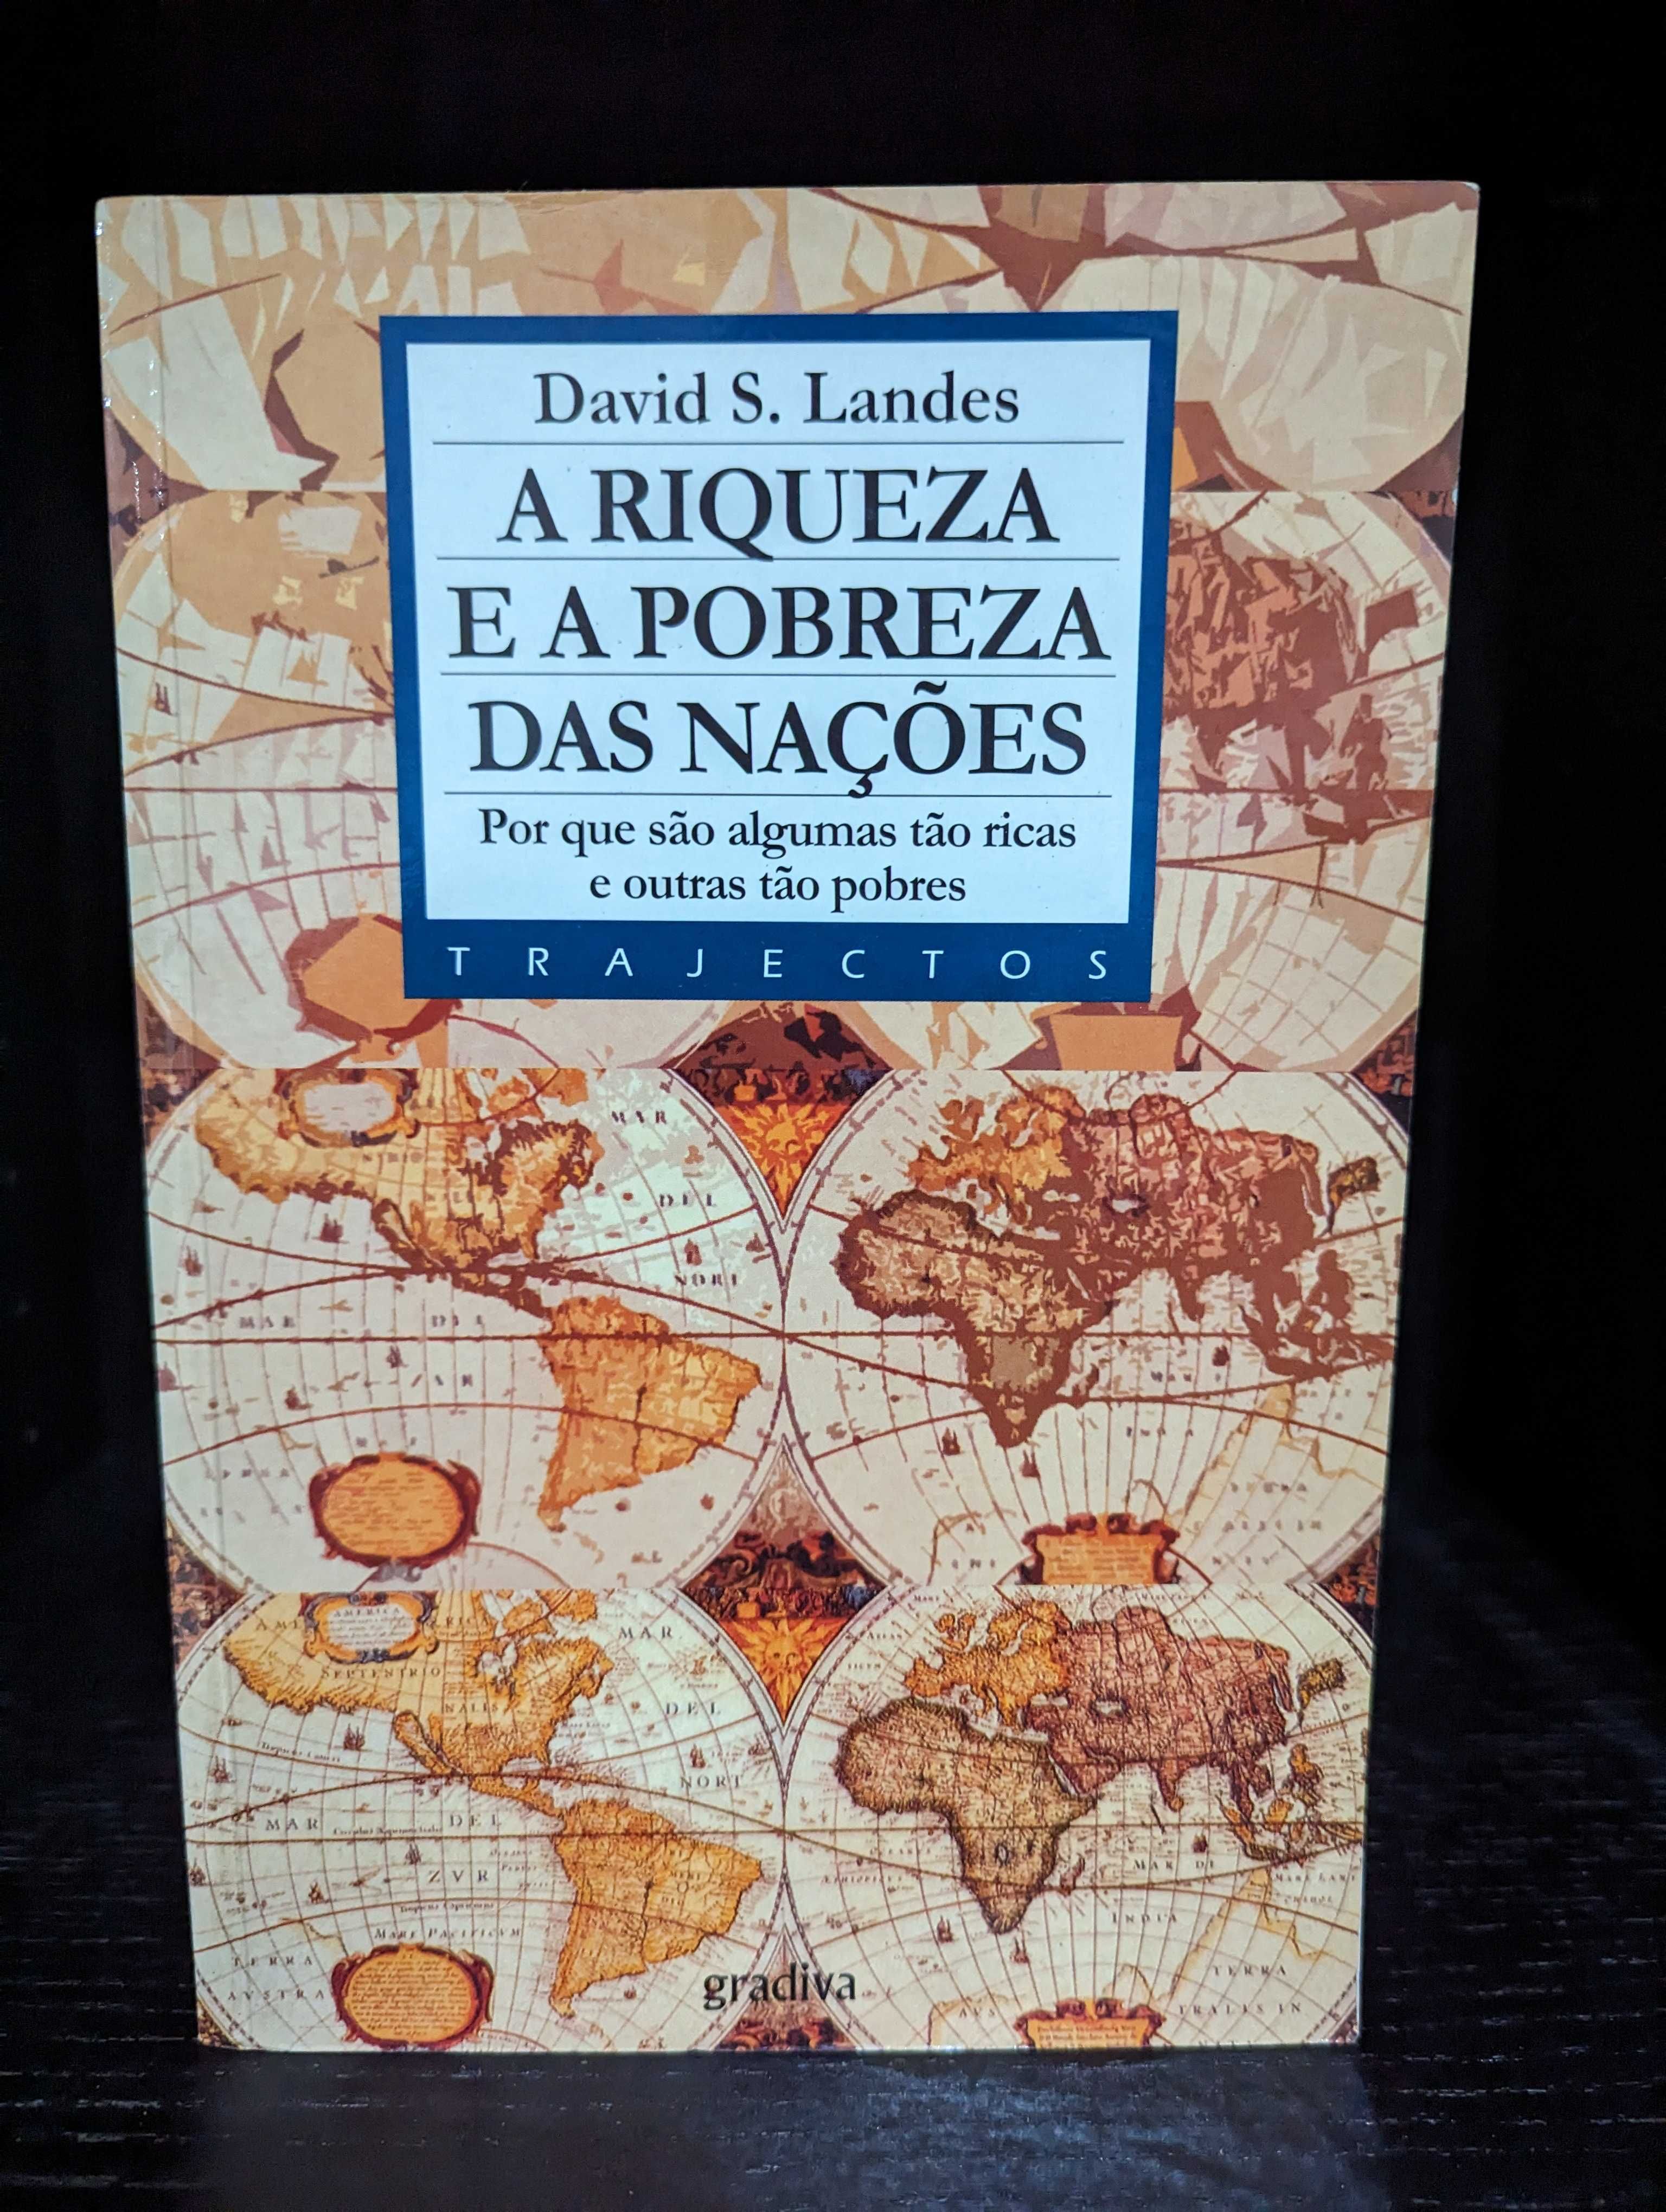 A Riqueza e a Pobreza dsa Nações - David S. Landes